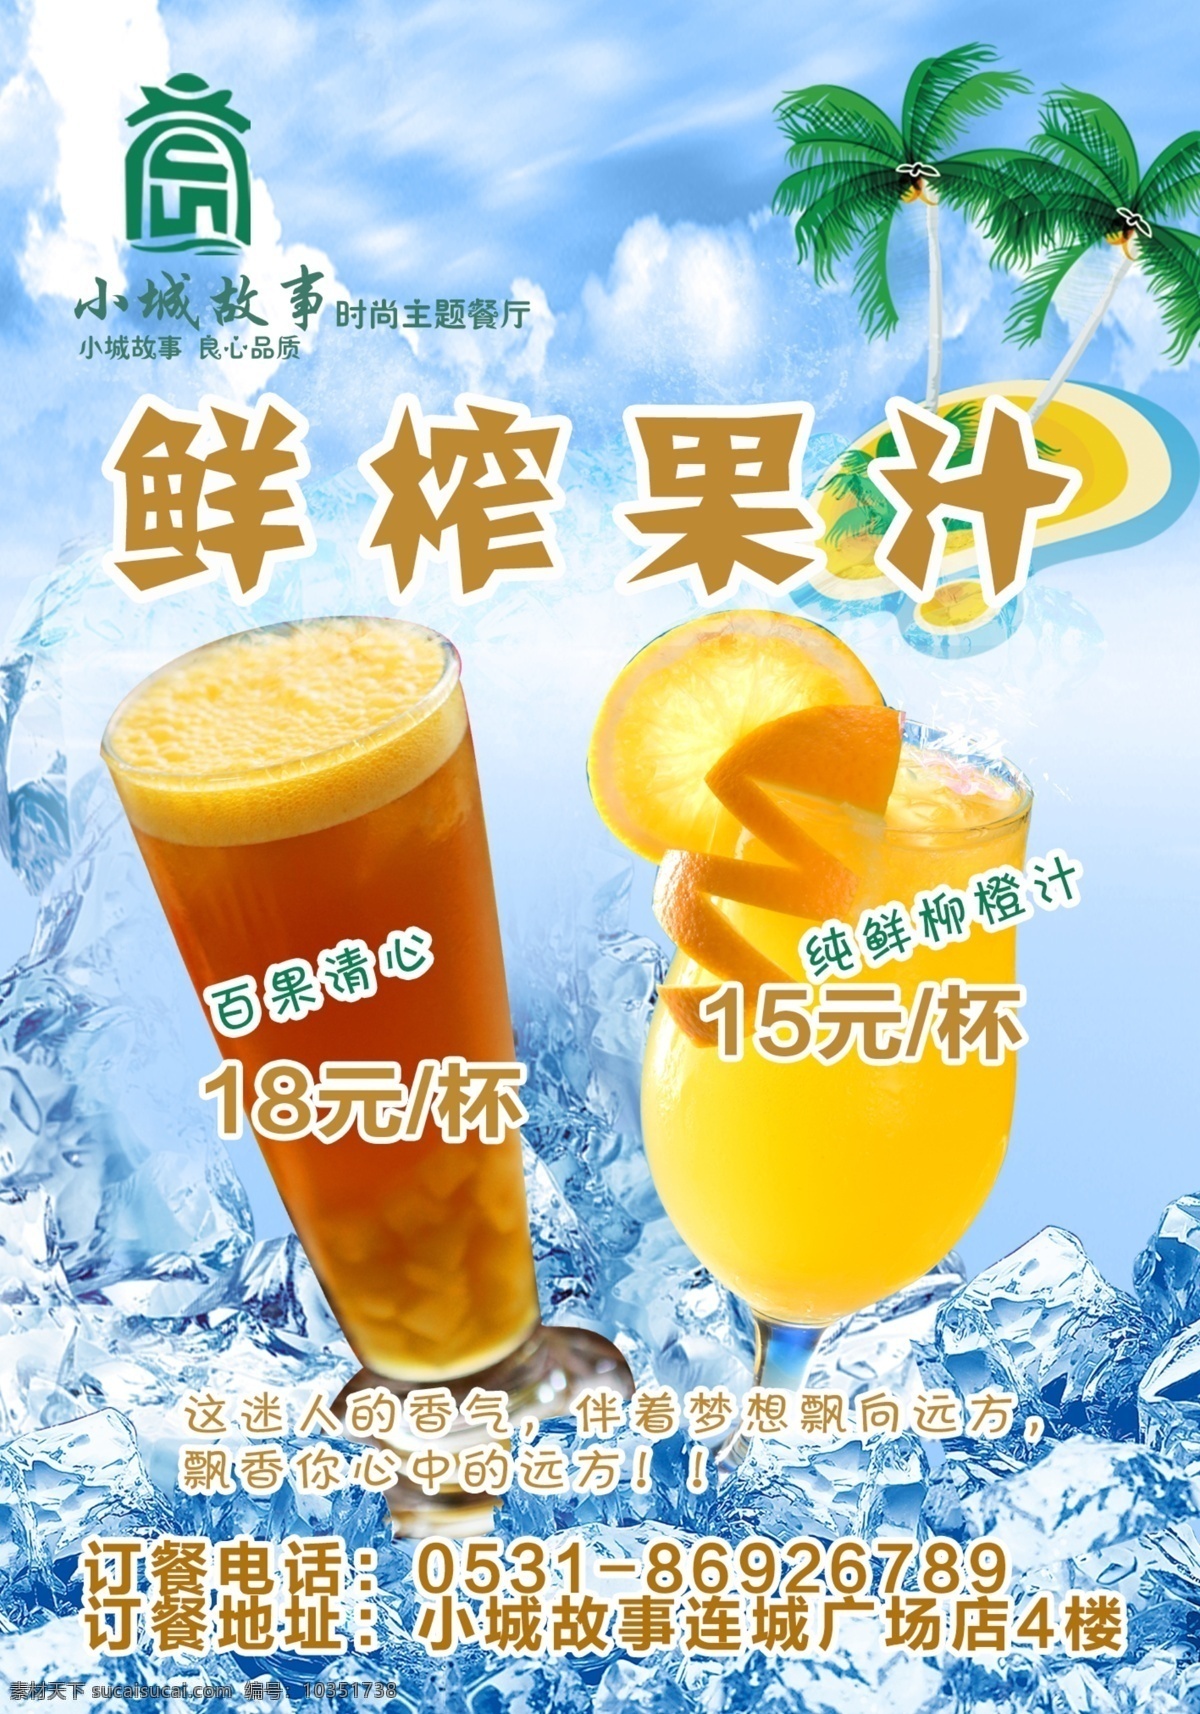 饮料 加冰服务 饮料海报 柳橙汁 奶茶 鲜榨果汁 冰块 冰 环冰 小城故事 海报